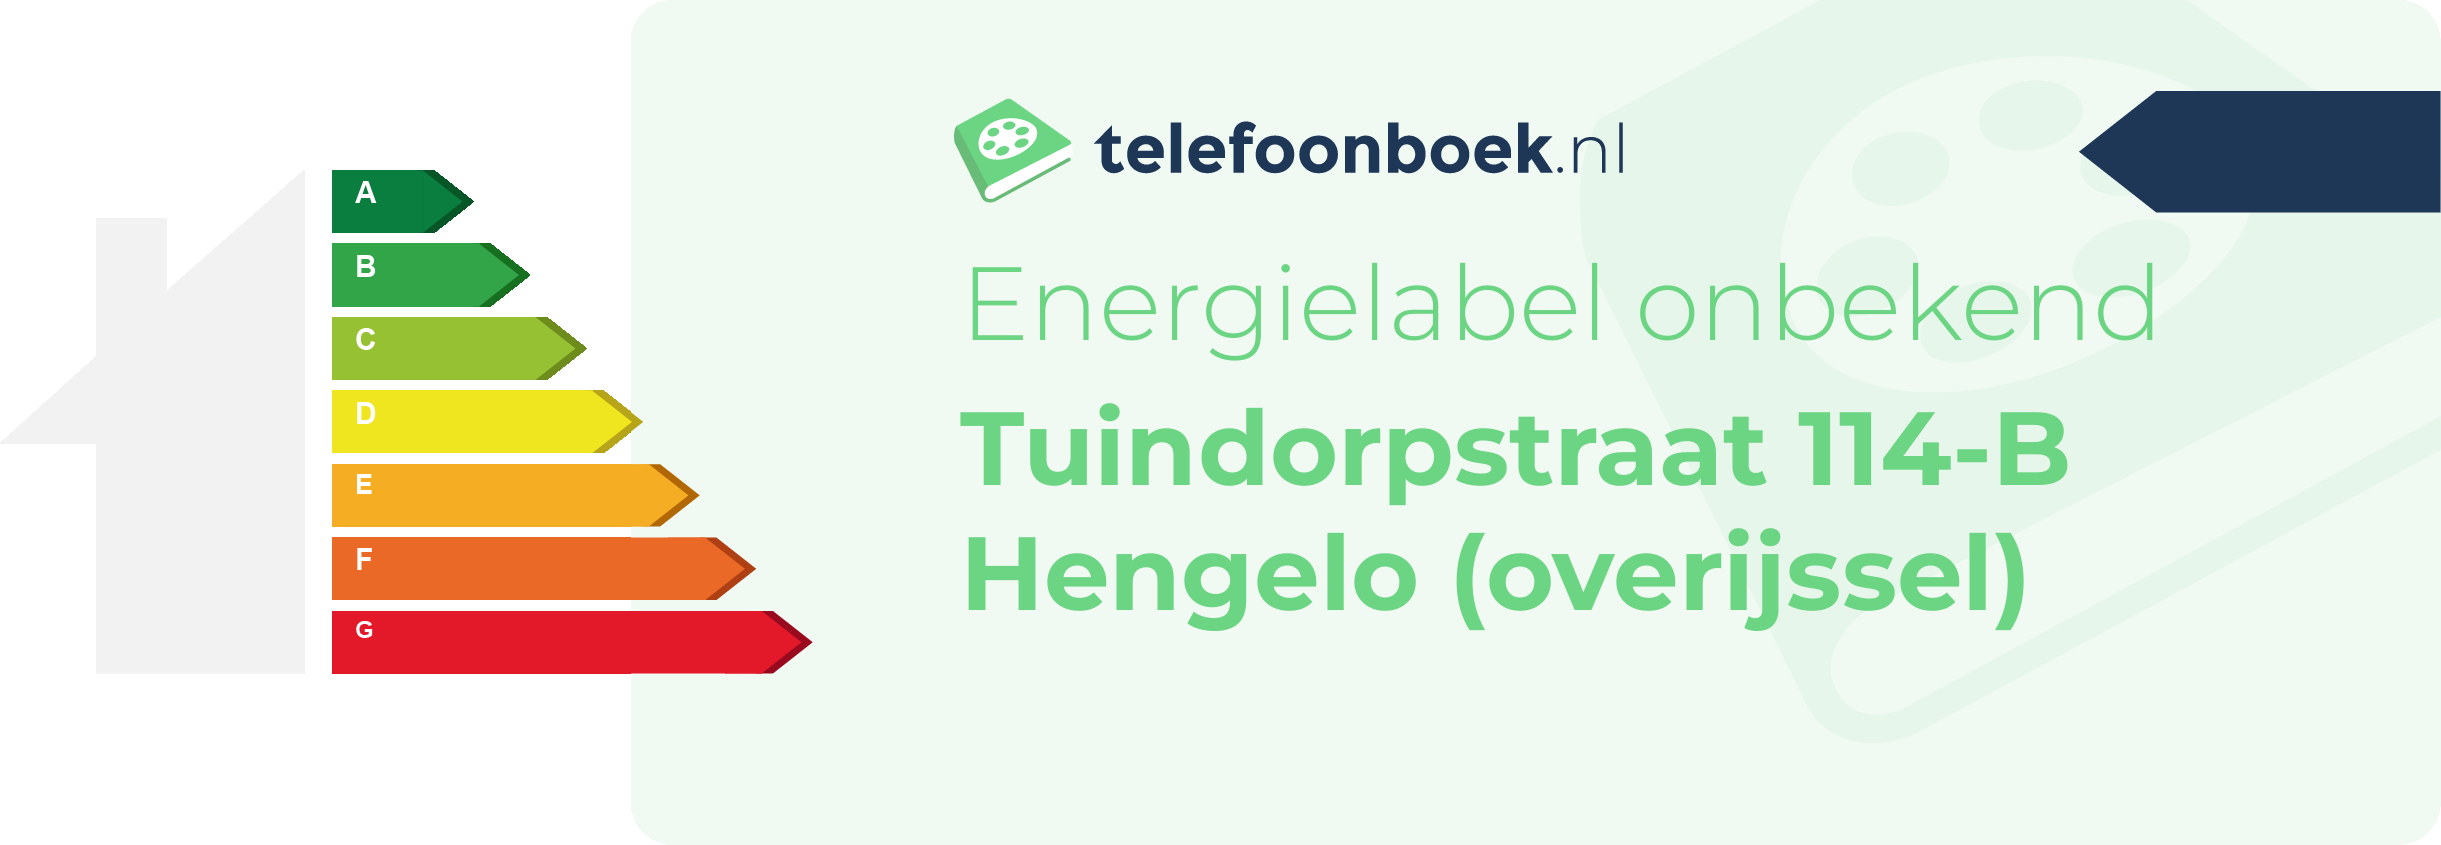 Energielabel Tuindorpstraat 114-B Hengelo (Overijssel)